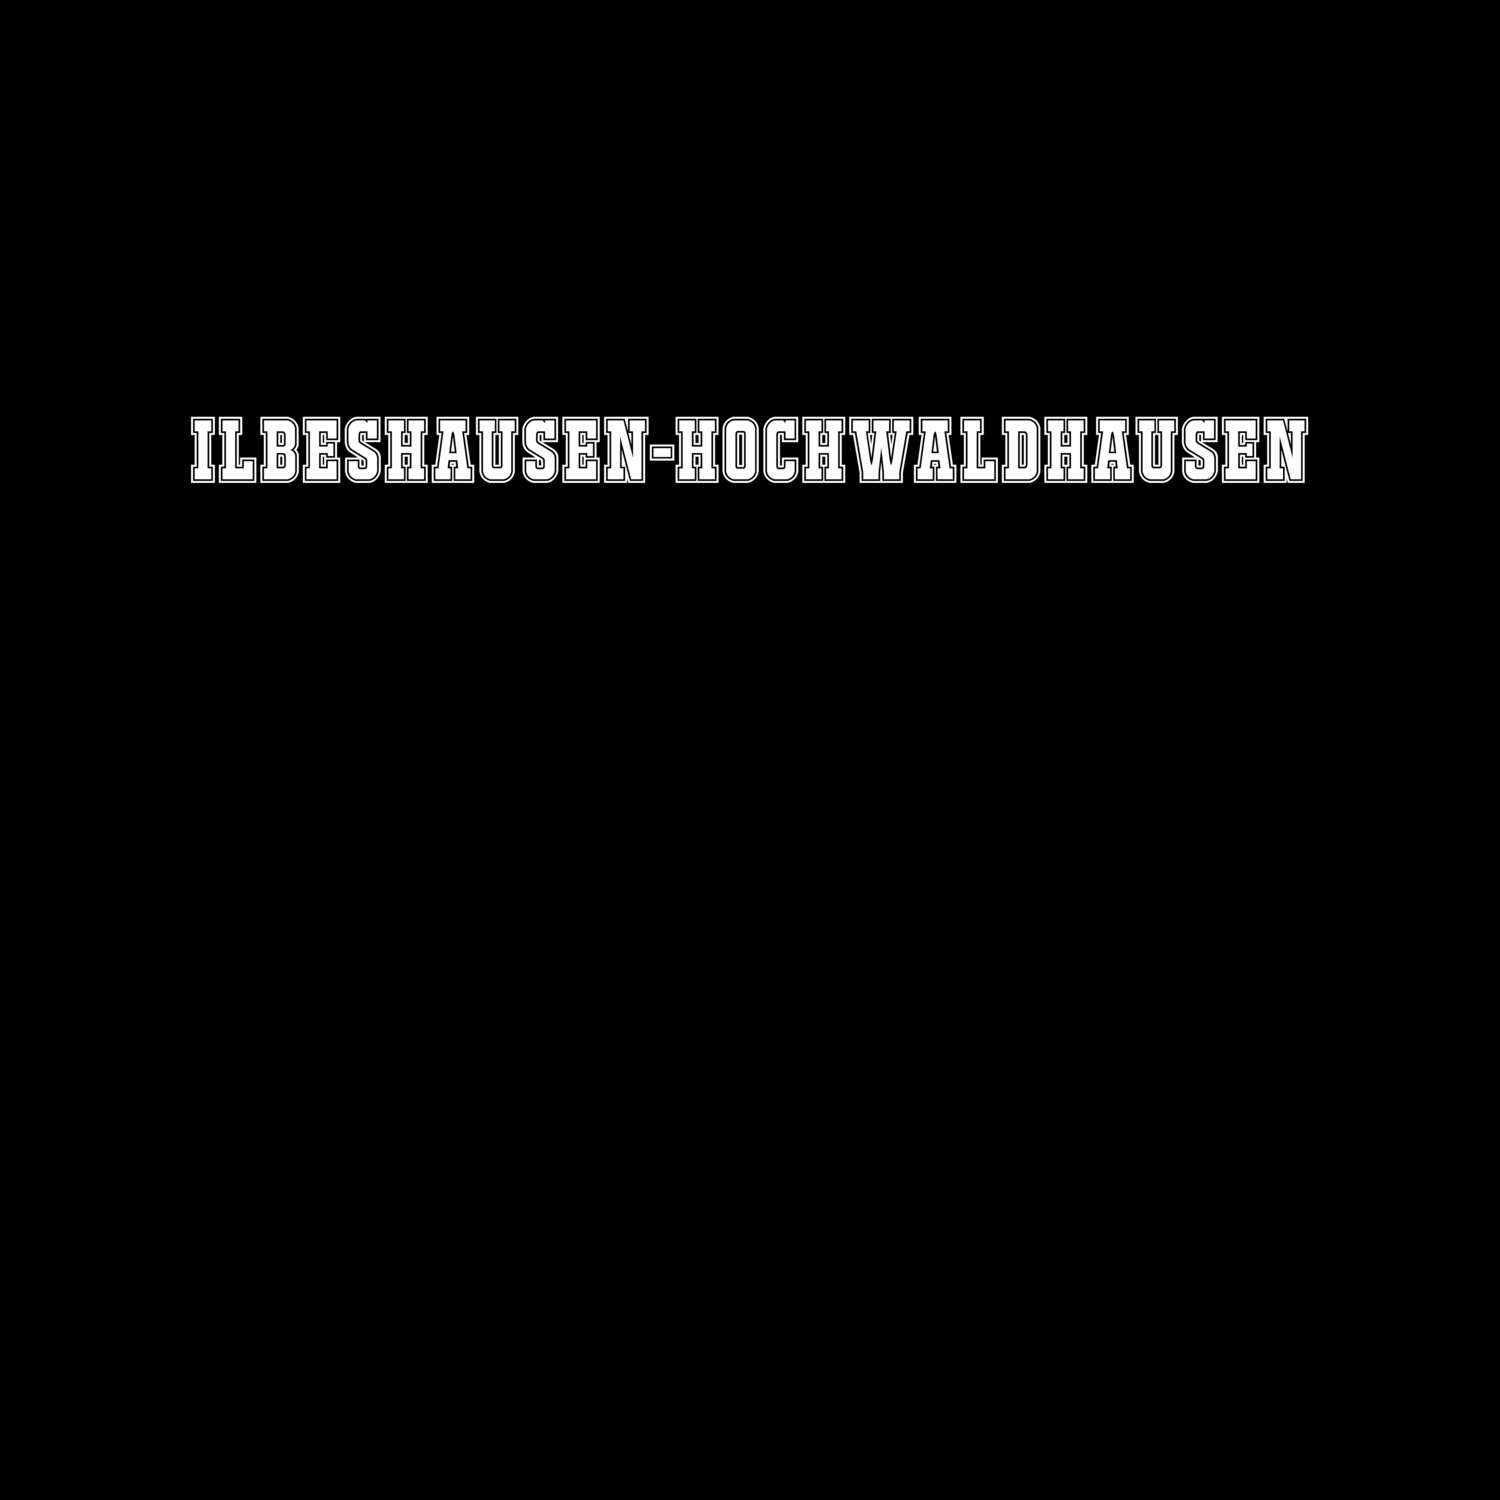 Ilbeshausen-Hochwaldhausen T-Shirt »Classic«